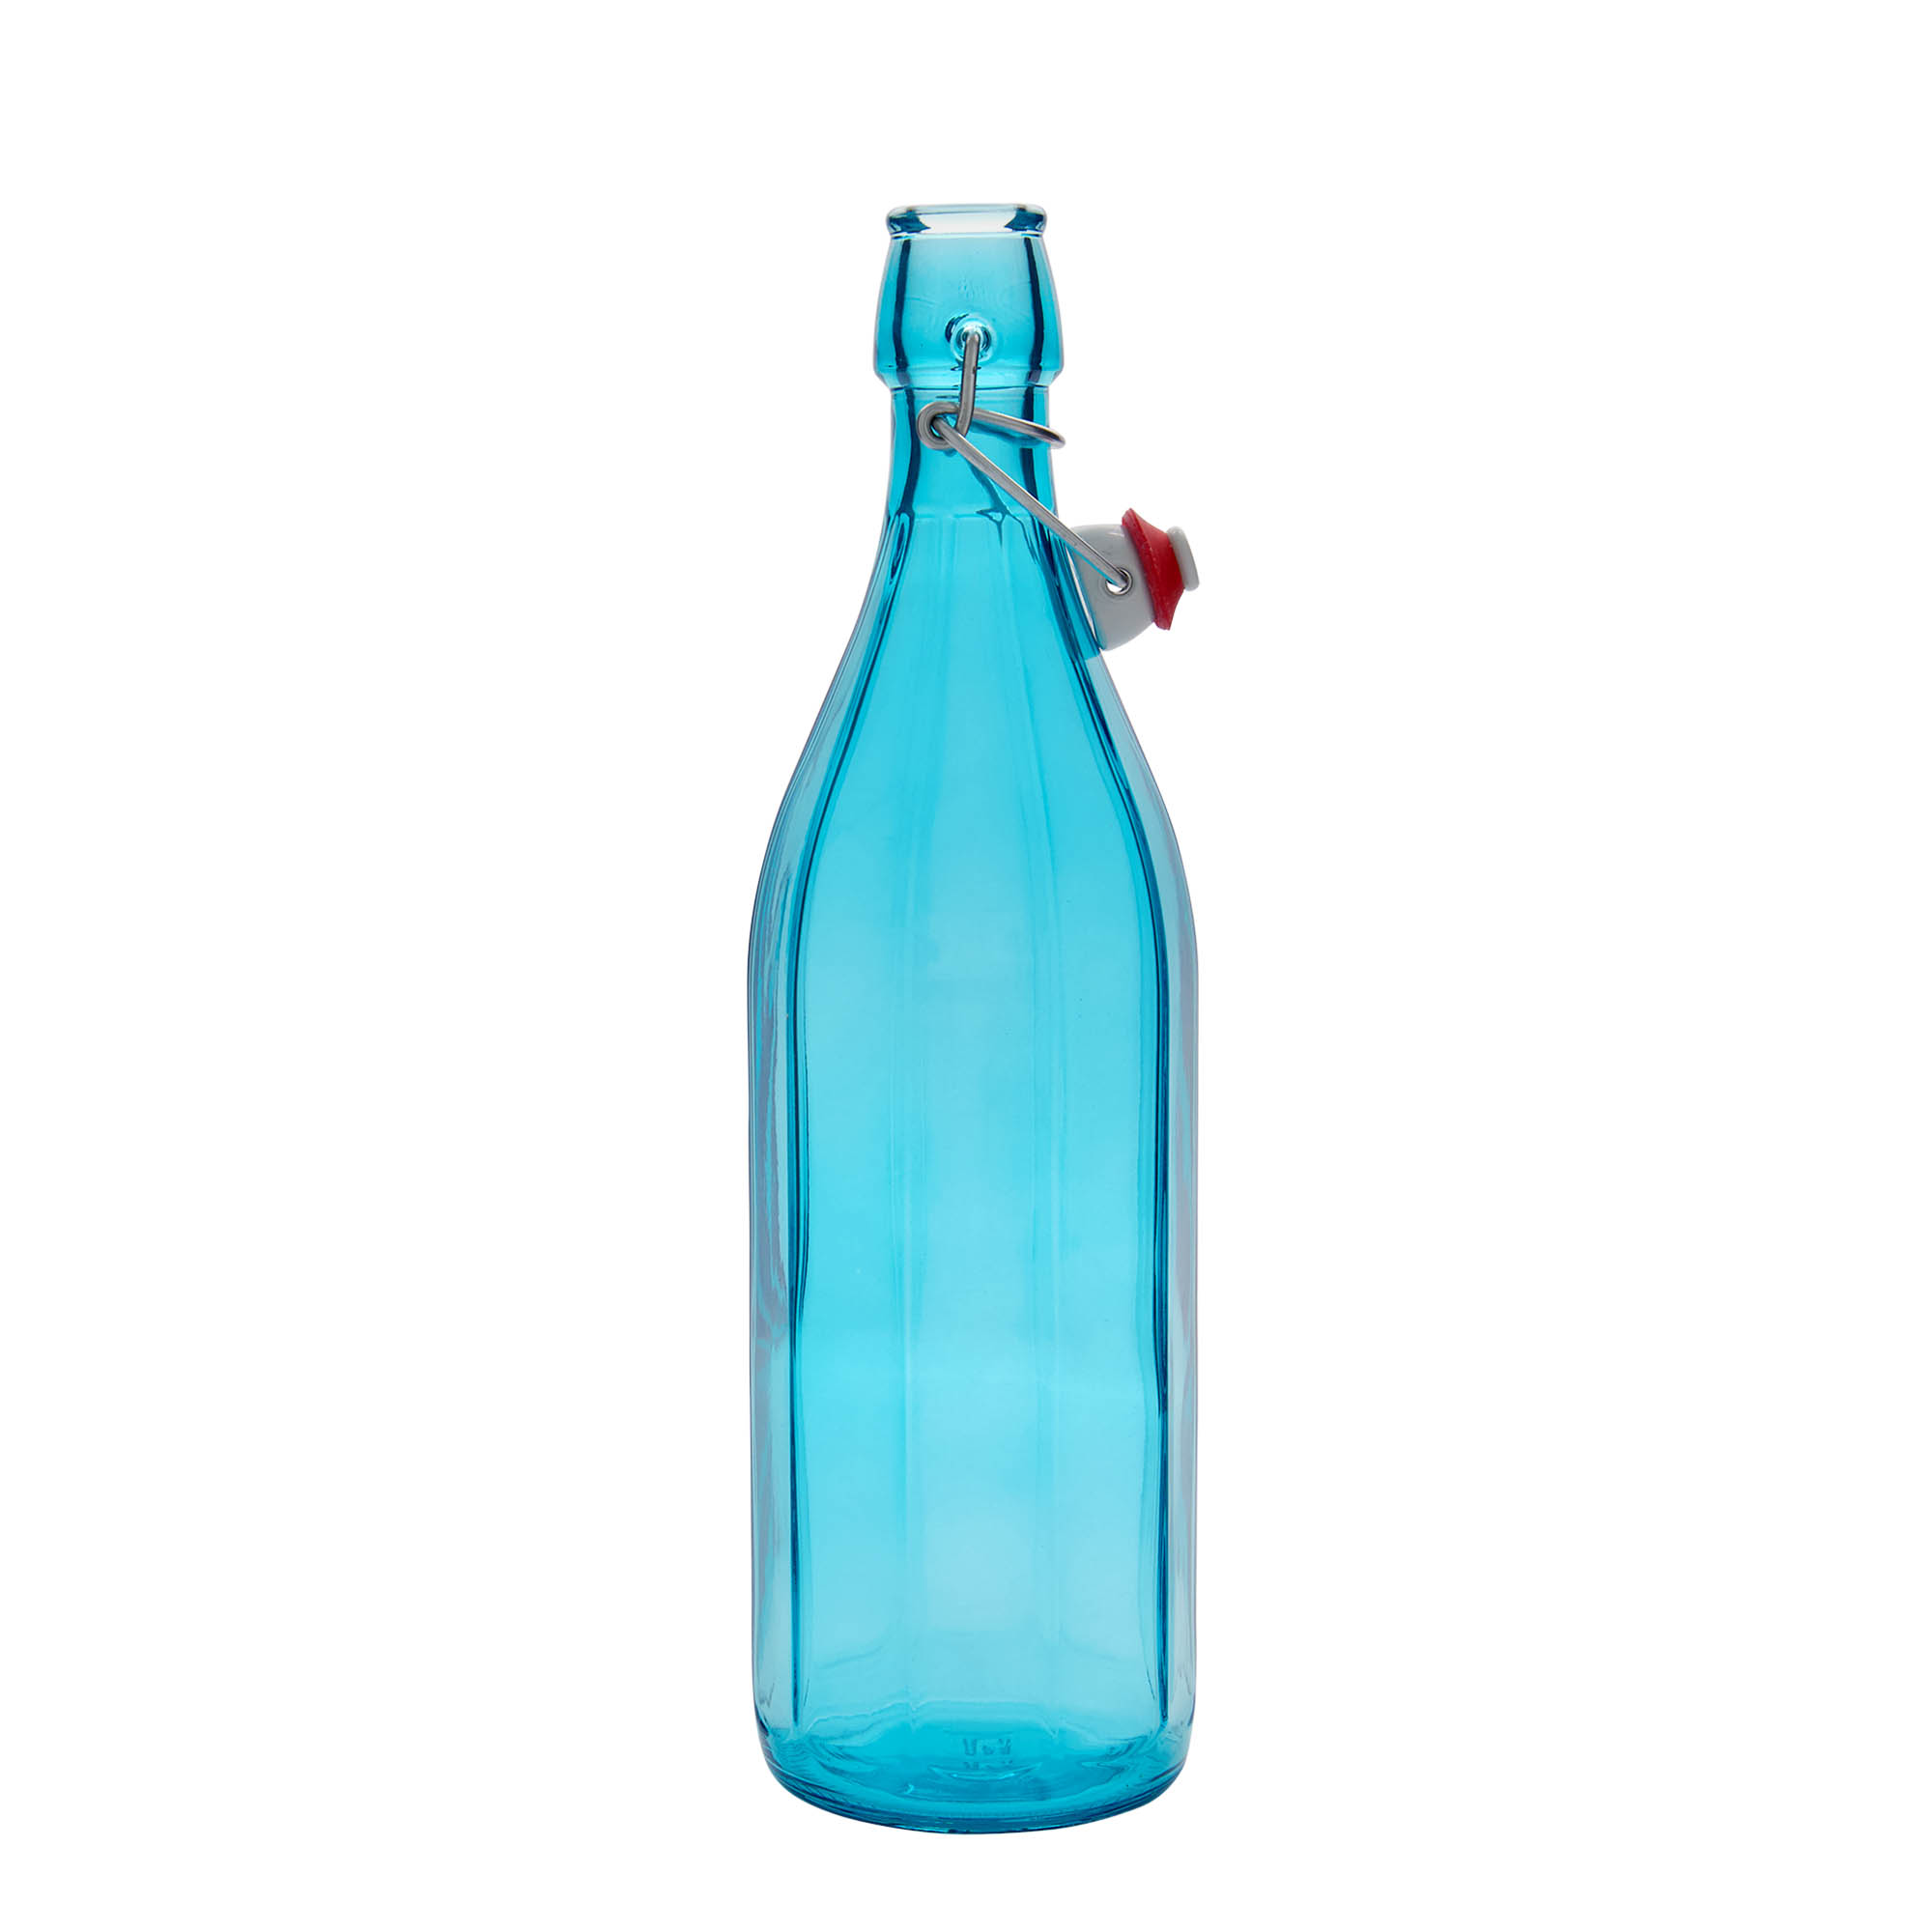 1,000 ml glass bottle 'Oxford', ten-sided, azure blue, closure: swing top